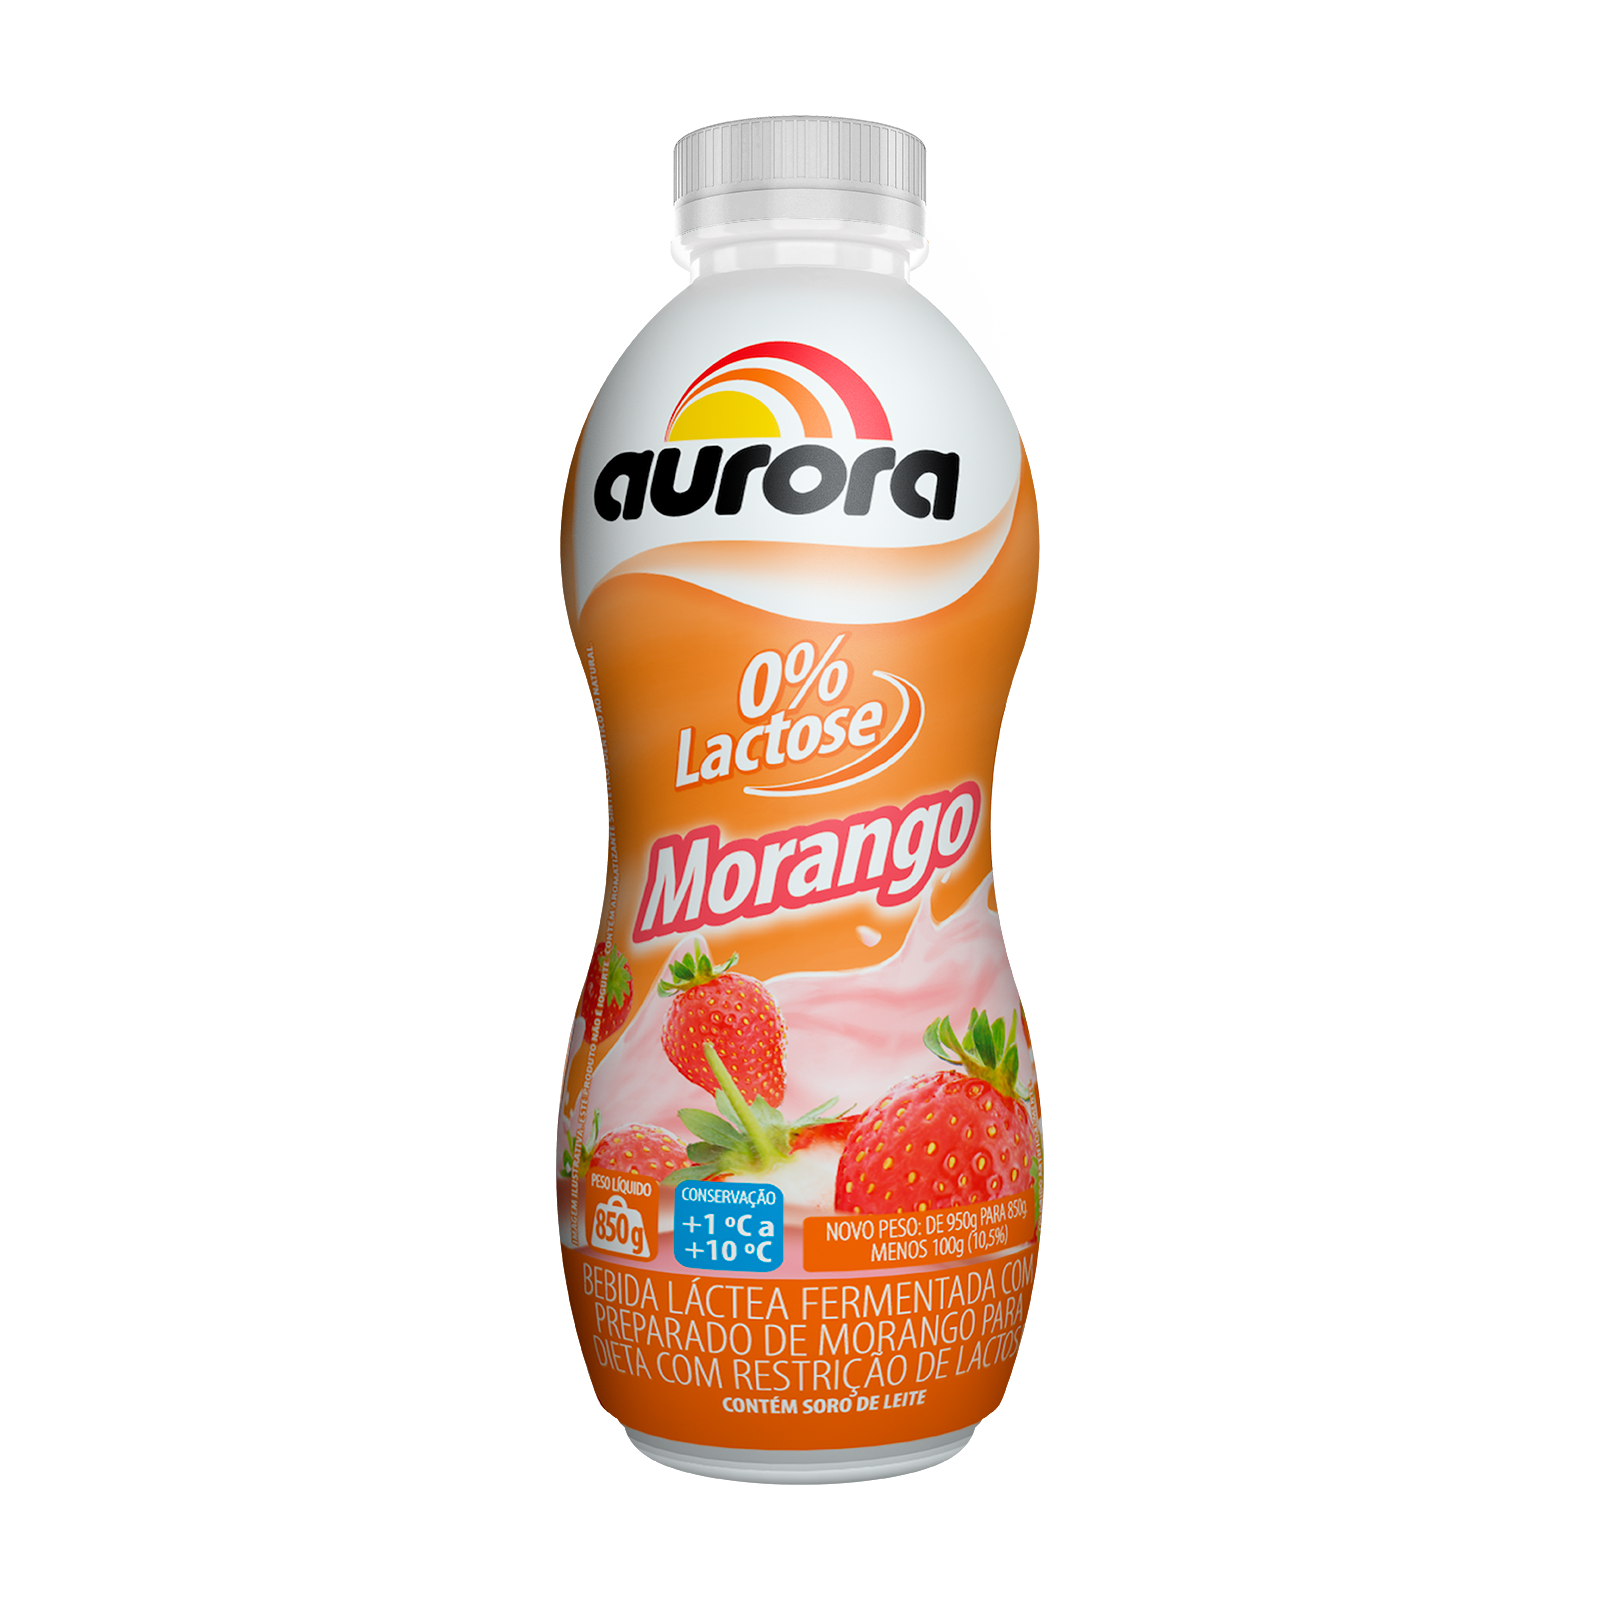 bebida-lactea-morango-0-lactose-aurora-850g